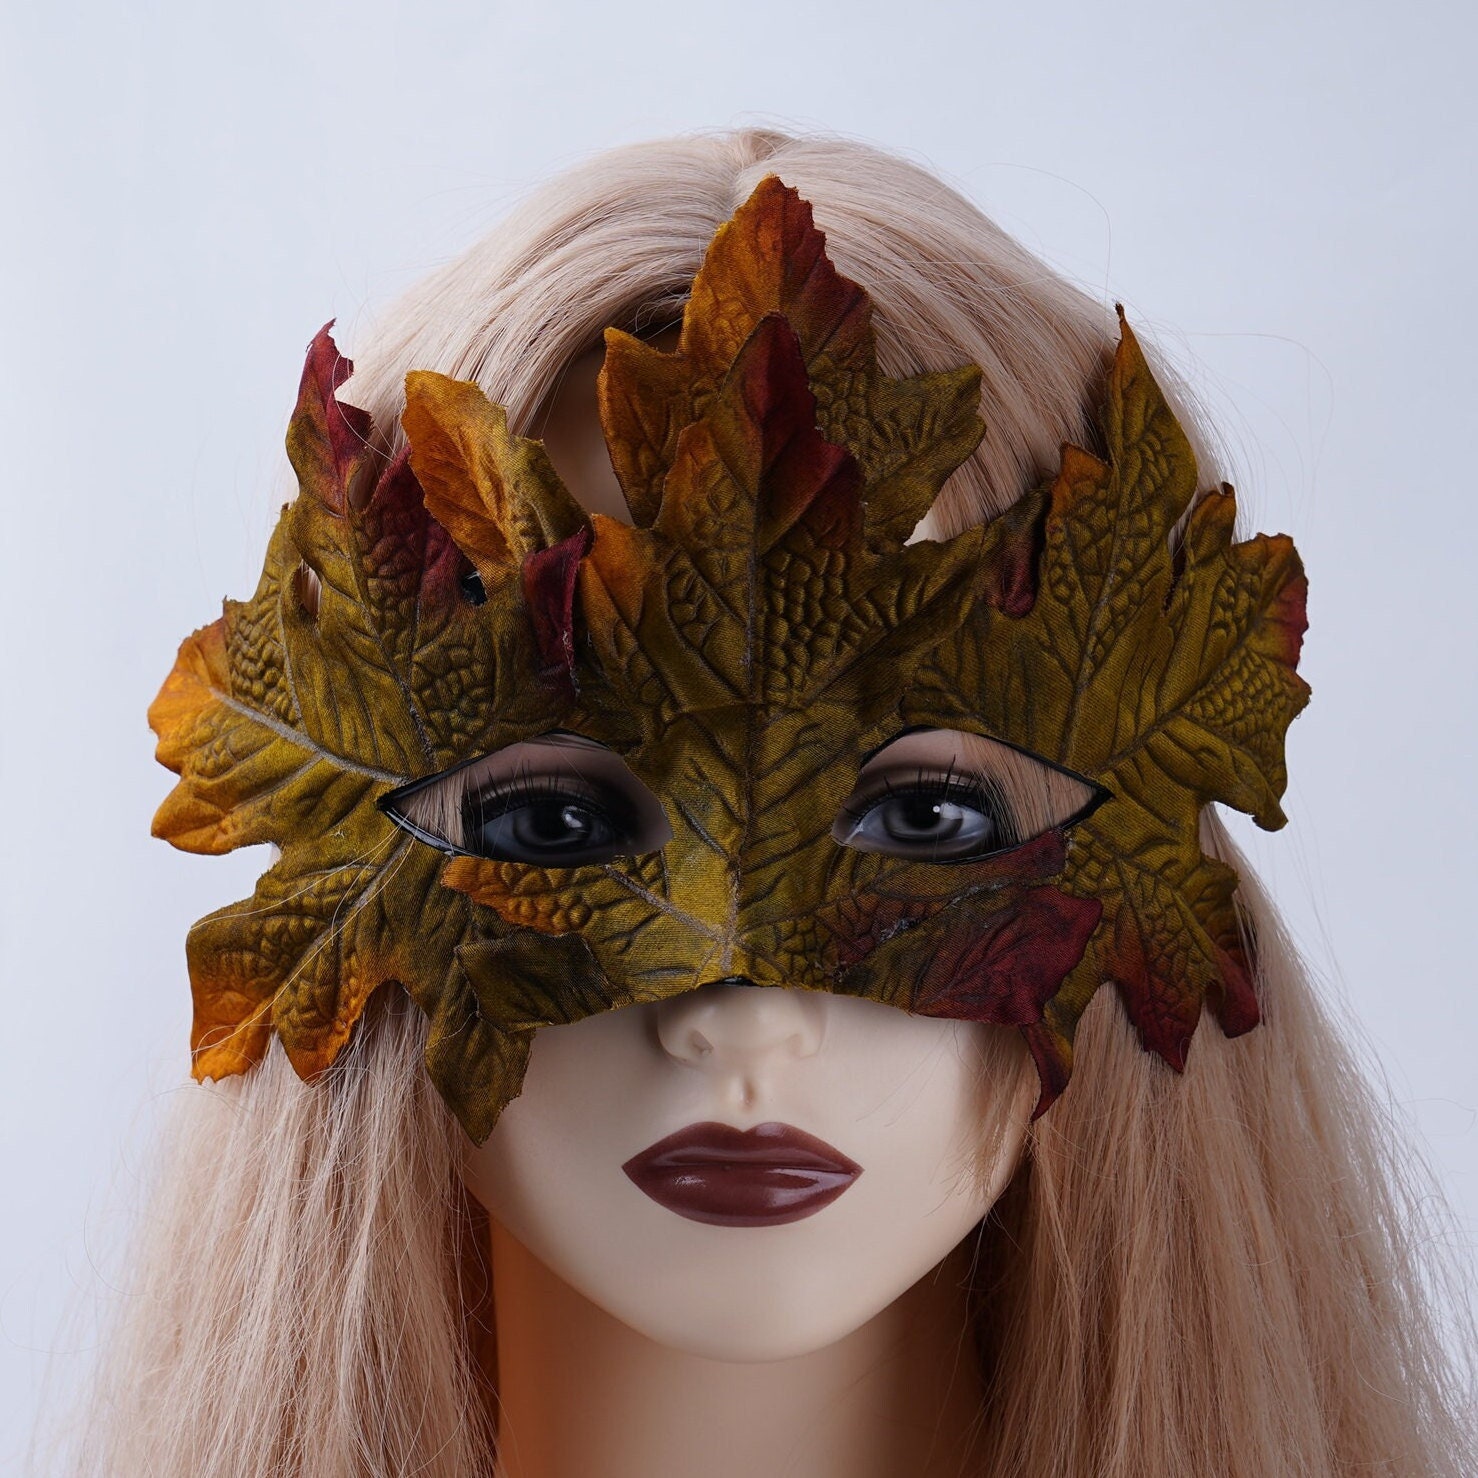 Why do most Renfaires restrict full face “costume” masks? I'm